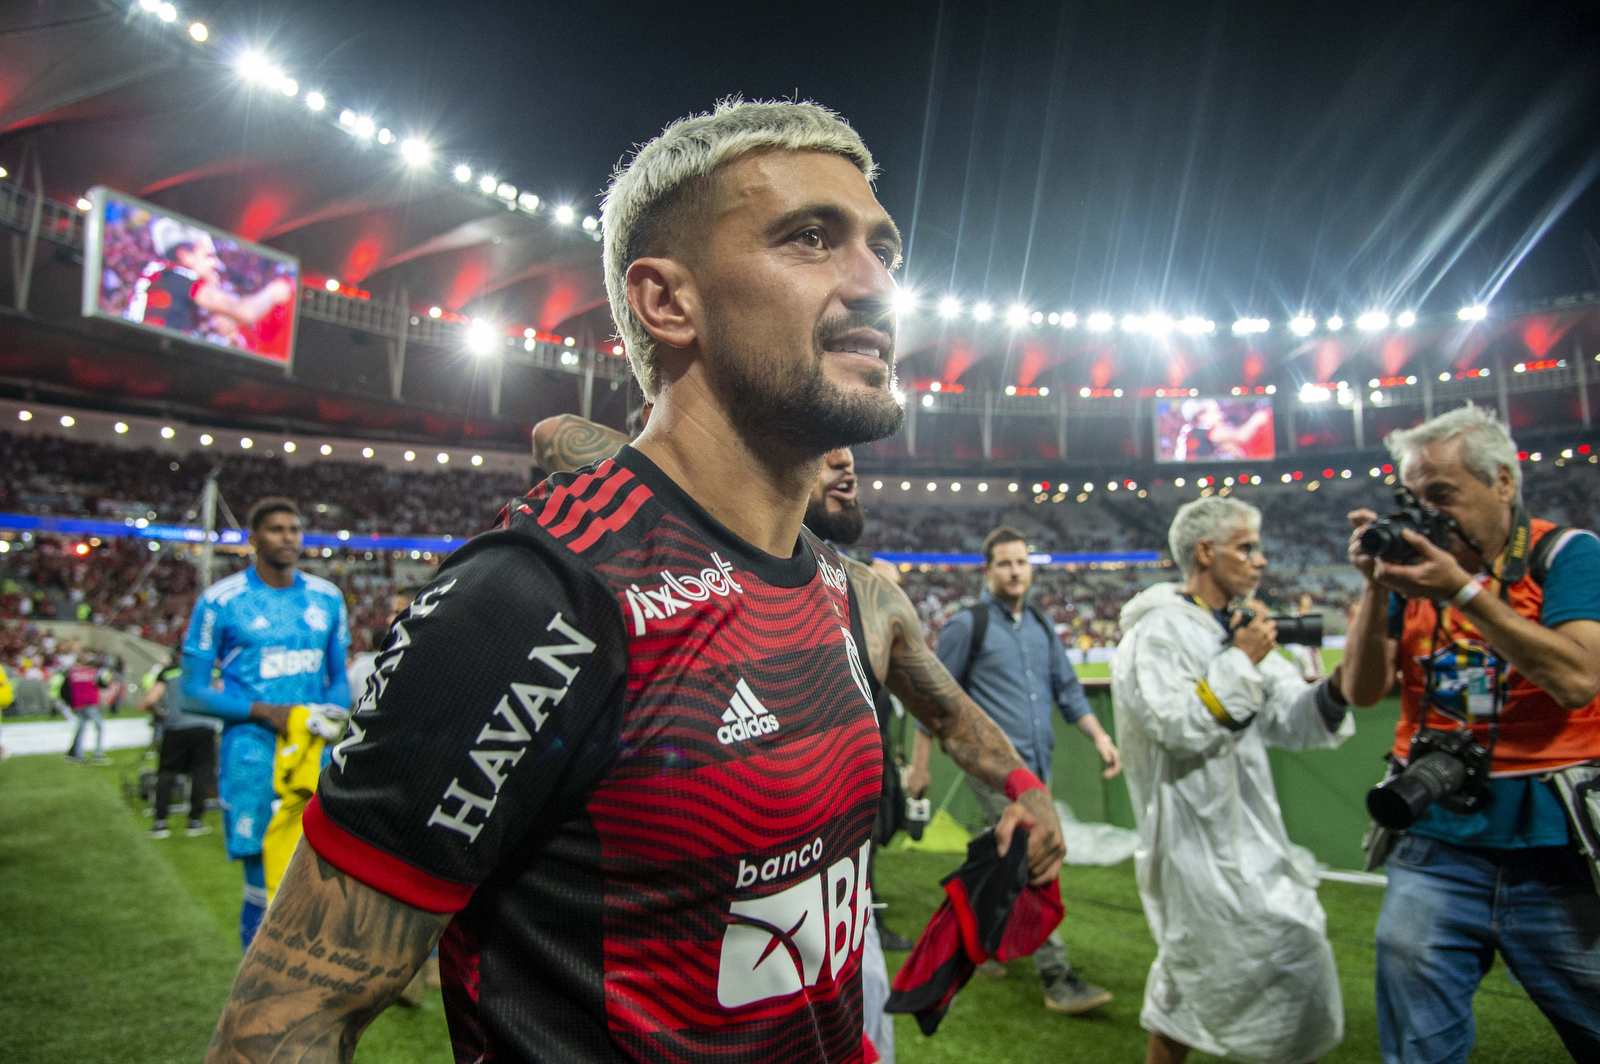 Copa do Brasil: Flamengo 1 x 0 São Paulo e Vai para a Final - Fim de Jogo